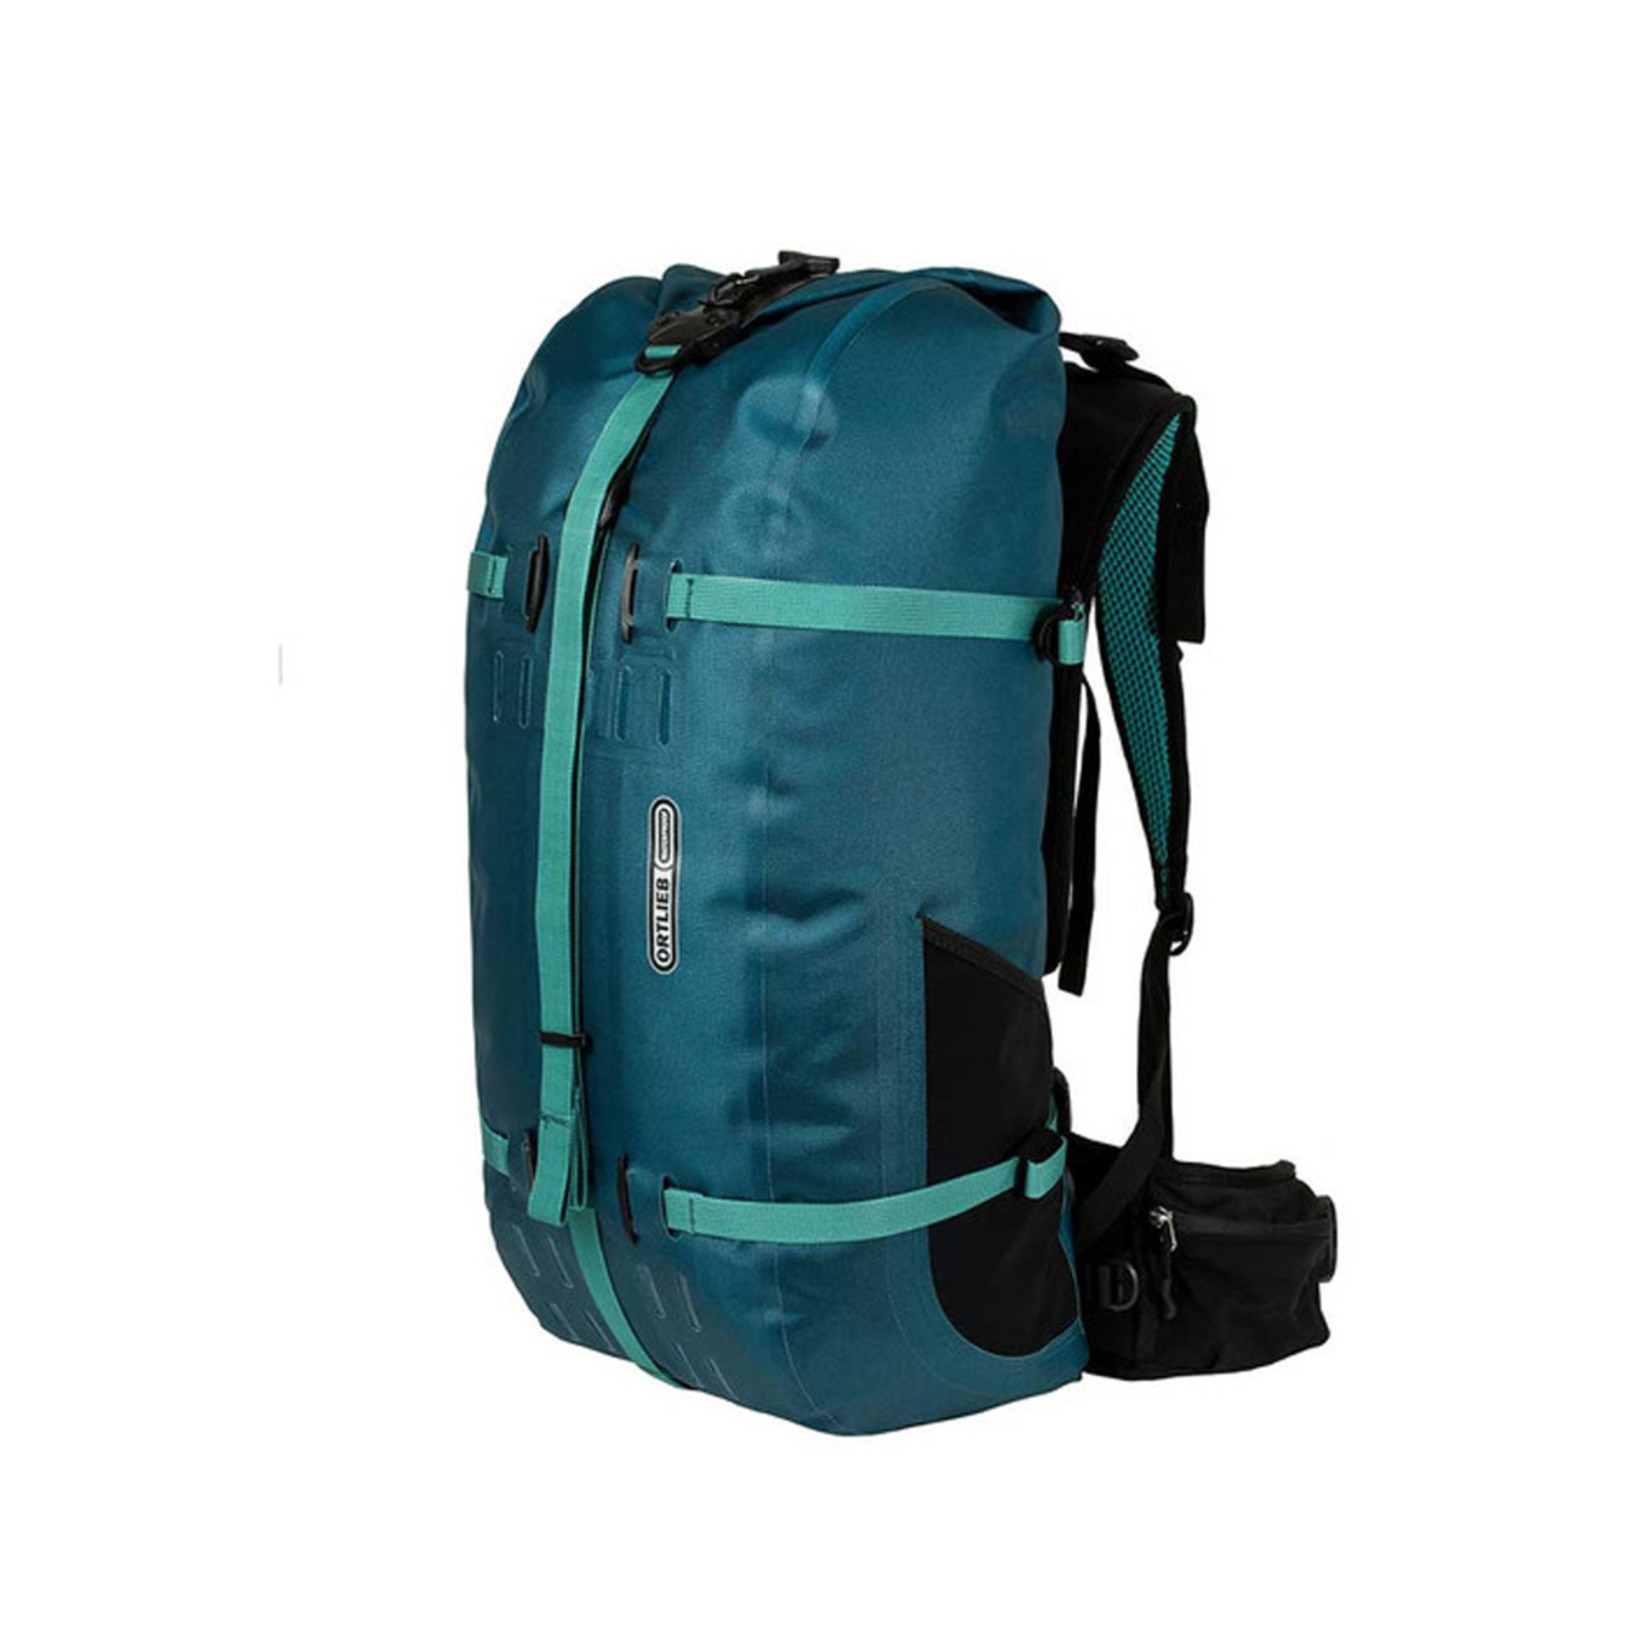 Ortlieb Ortlieb Atrack Waterproof Backpack Bag R7032 - 25L Petrol